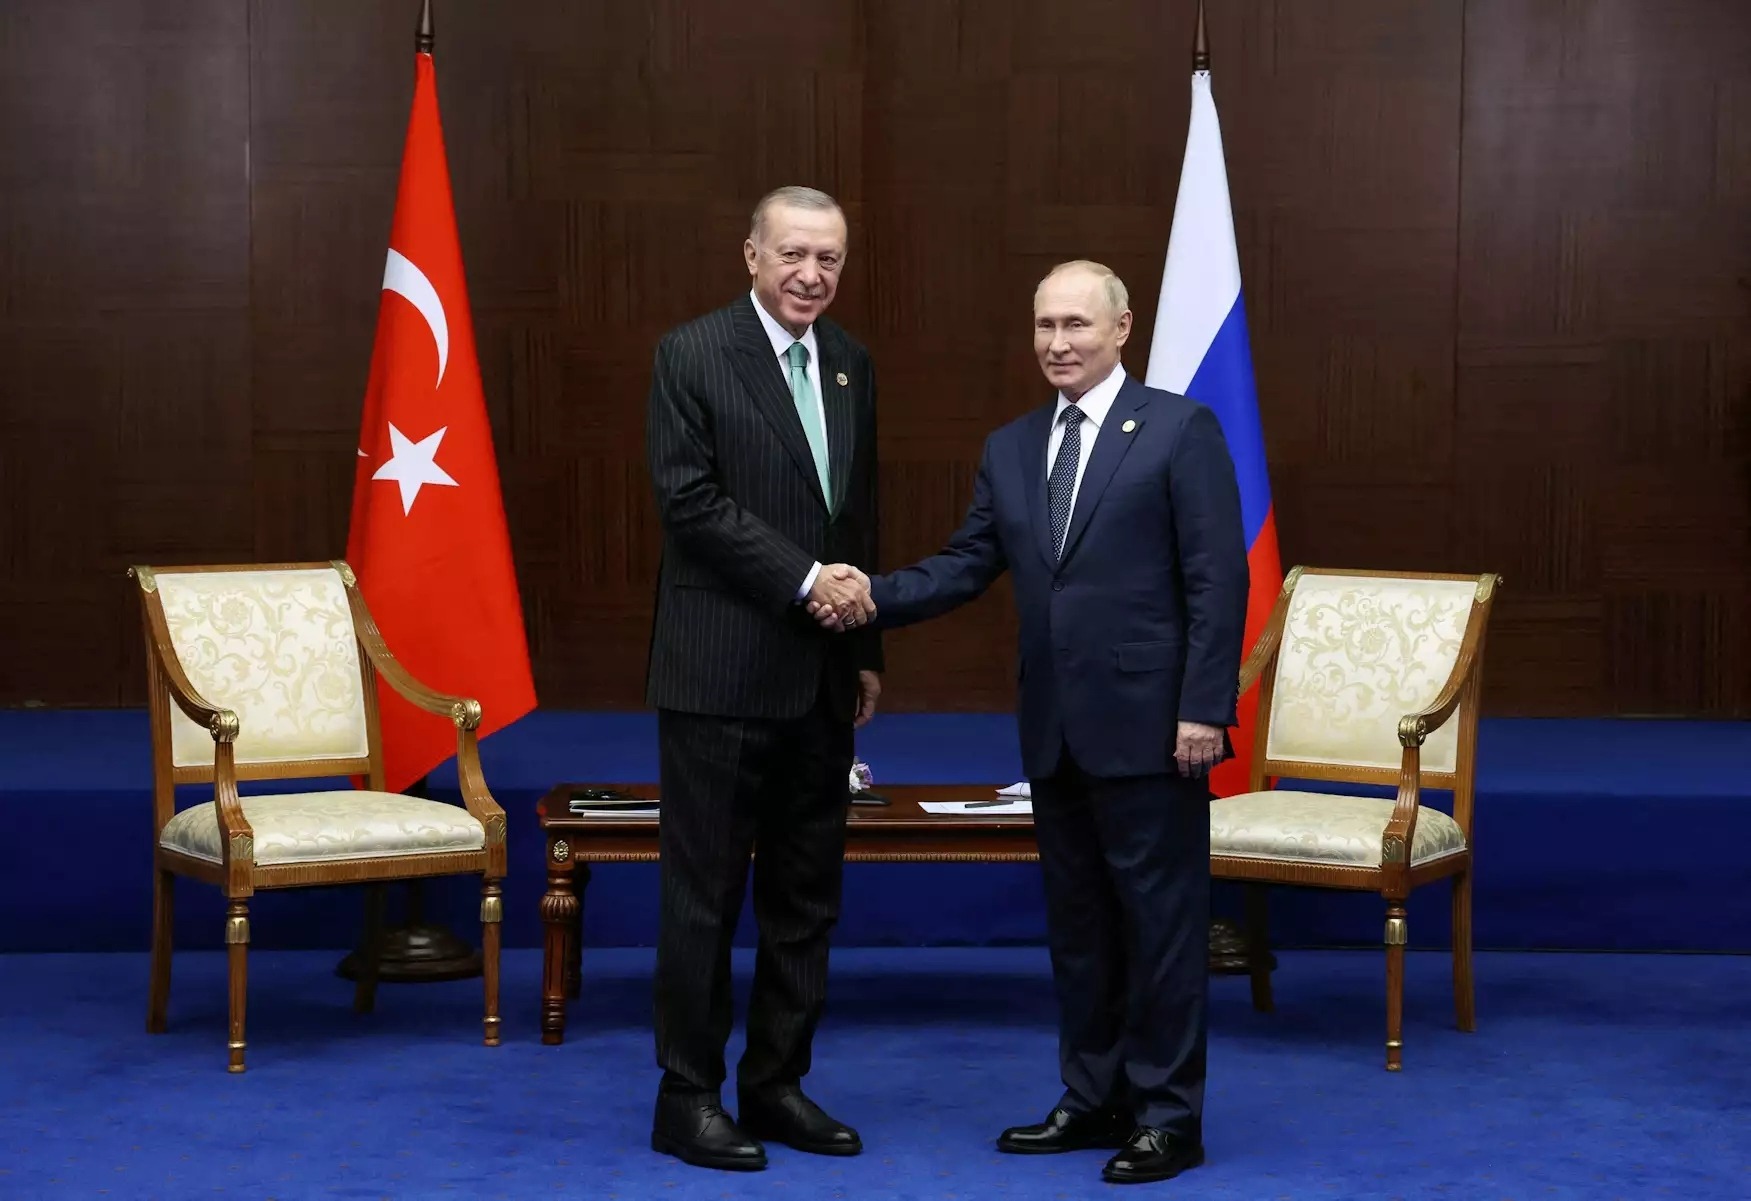 Ερντογάν: Θα έρθει ο Πούτιν στην Τουρκία, αλλά όχι σύντομα